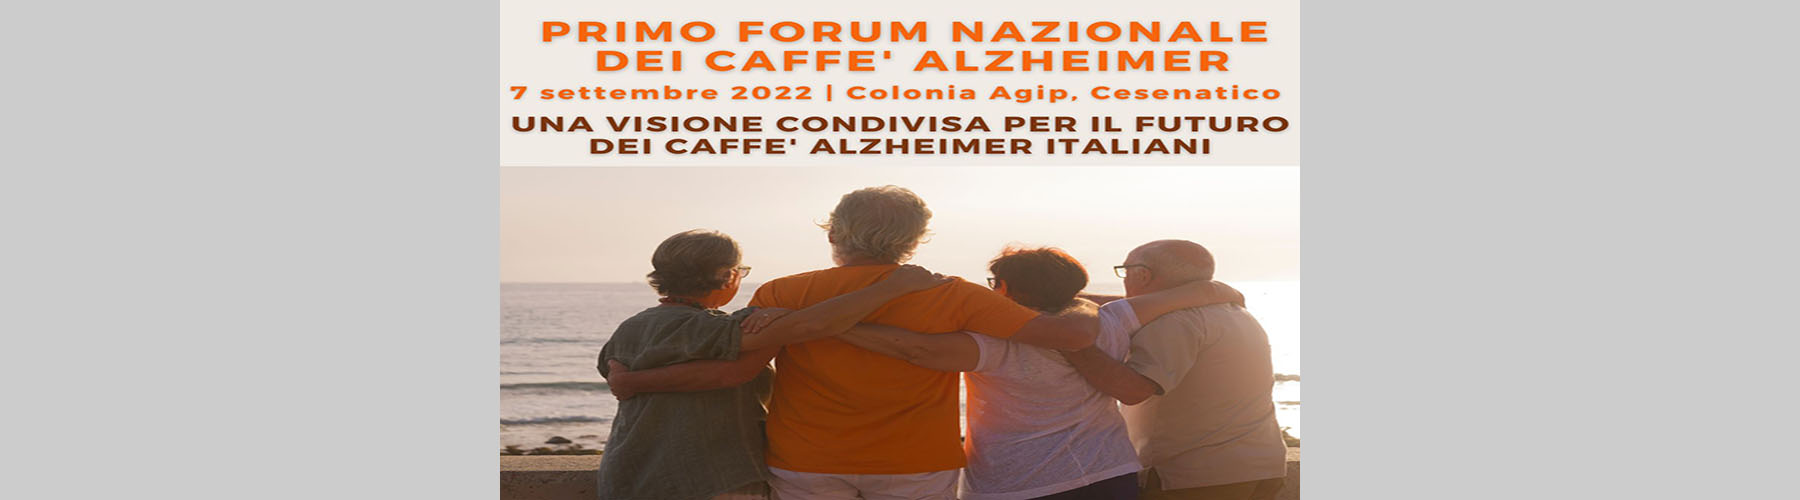 1 forum caffe alzheimer